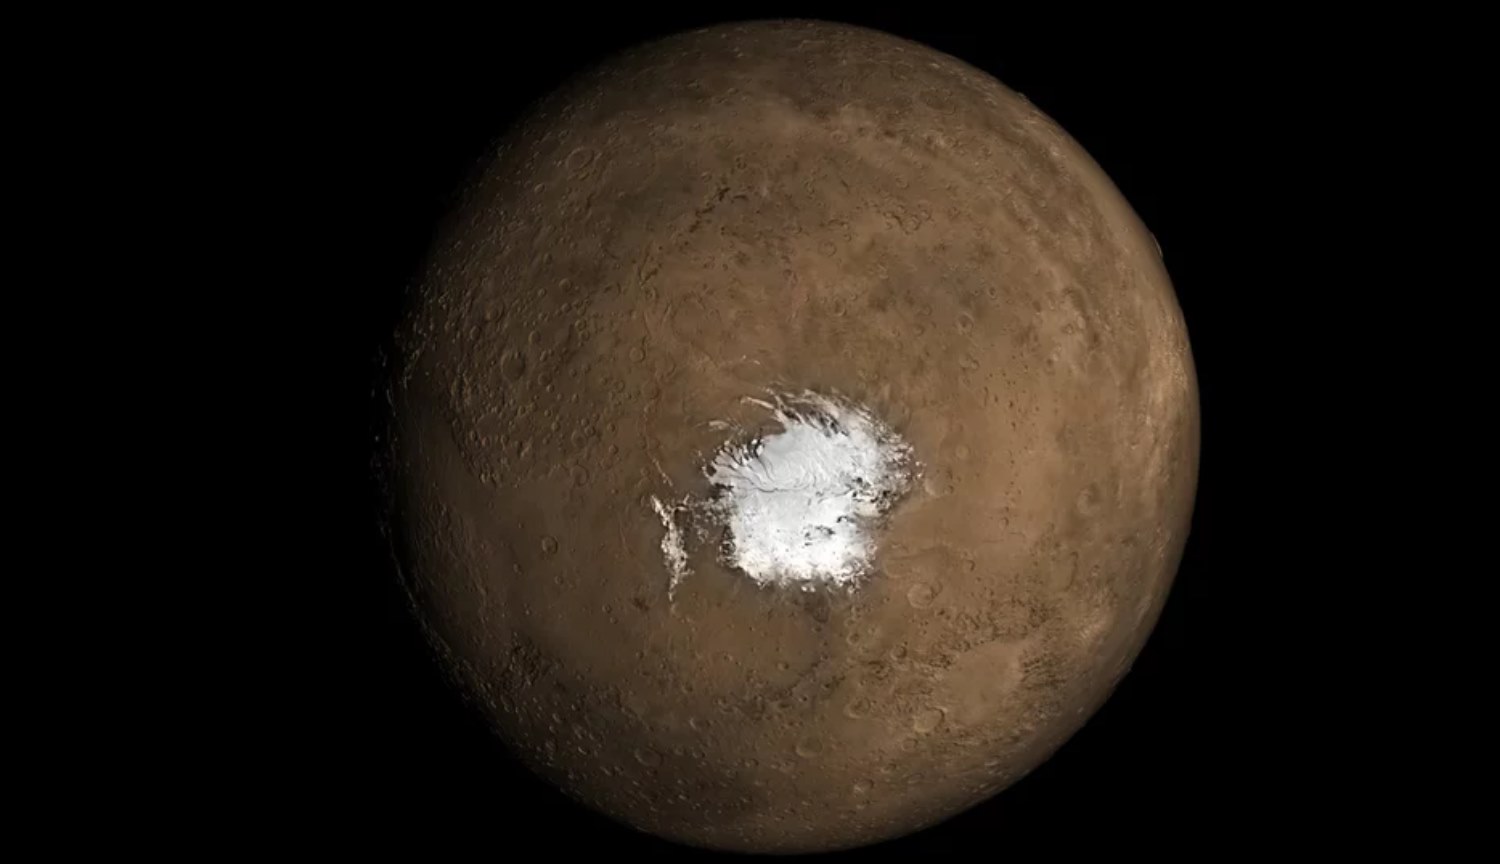 ودعا والسبب الثاني وجود مياه سائلة على سطح المريخ